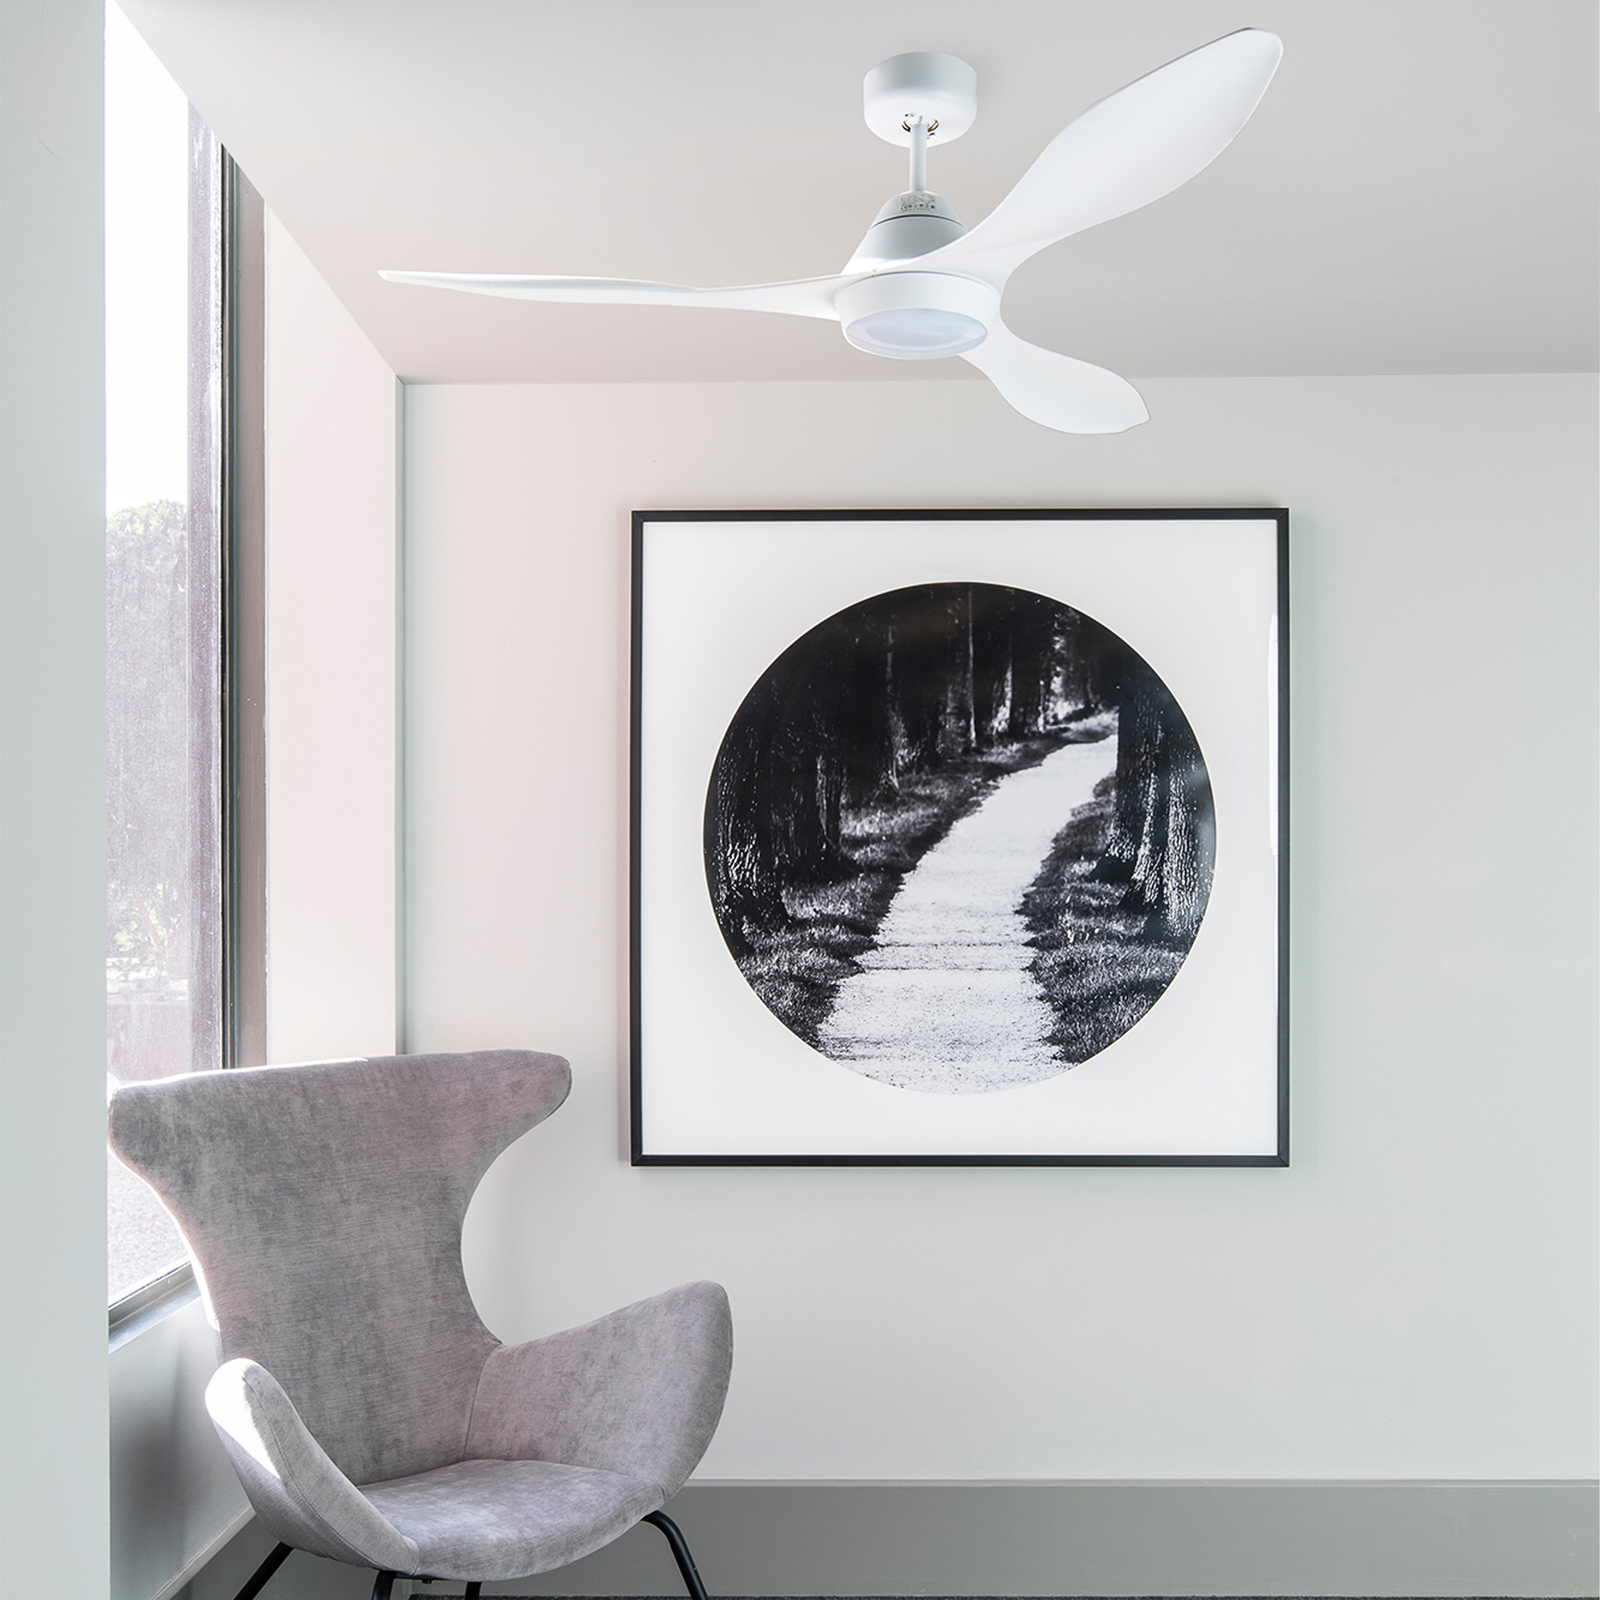 Ventilateur plafond LED Polaris L, 3 pales, blanc